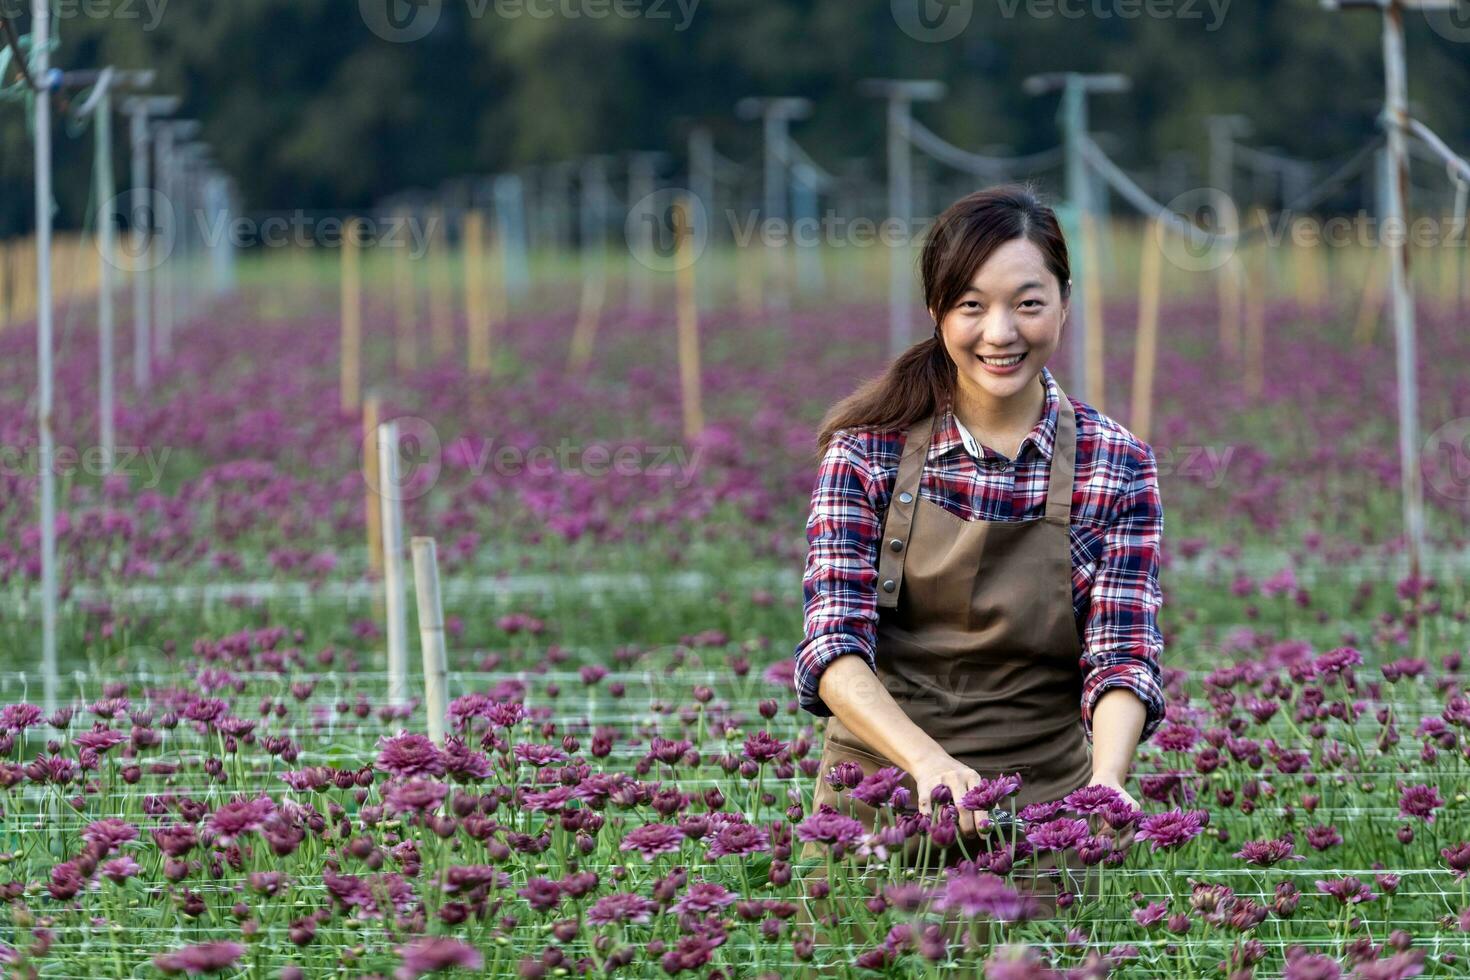 asiatico donna giardiniere è taglio viola crisantemo fiori utilizzando cesoie per tagliare fiore attività commerciale per morto intestazione, coltivazione e raccogliere stagione foto